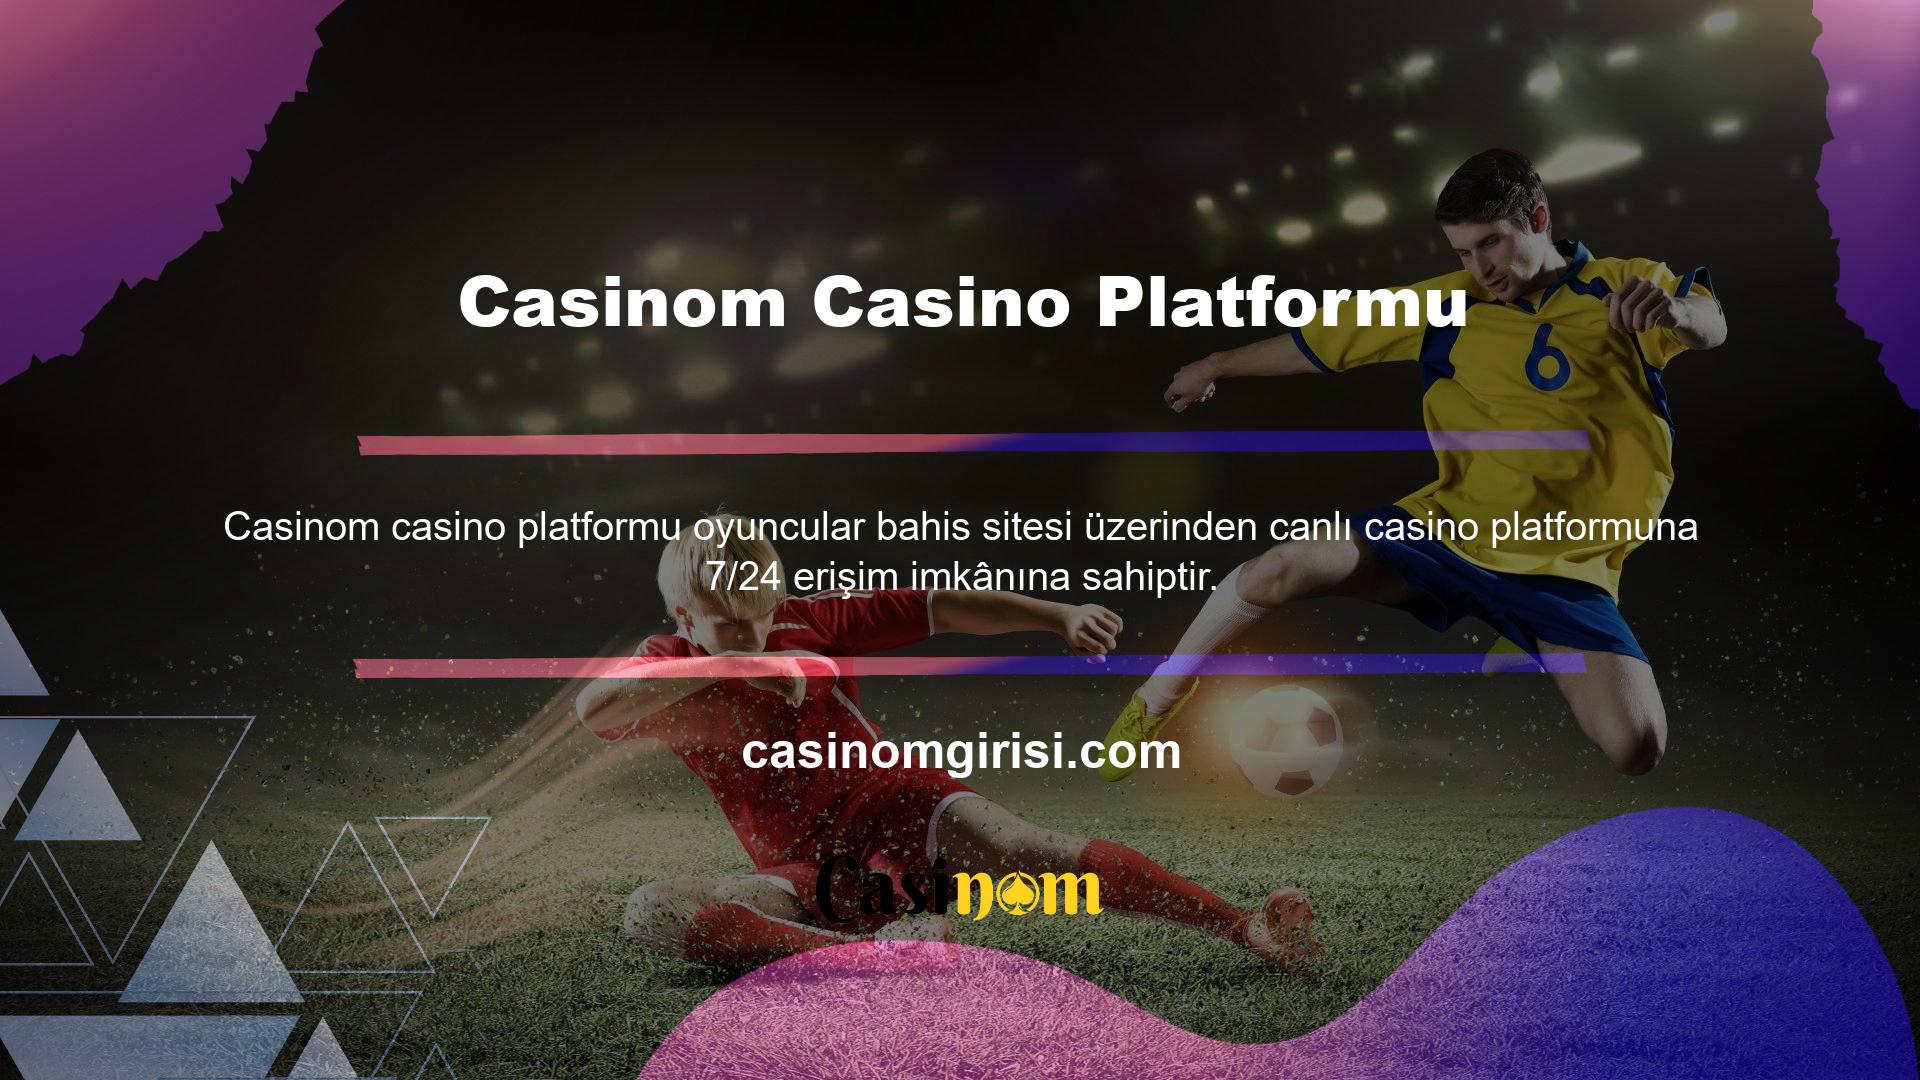 Bahisçiler canlı casino hakkında genel bilgileri ana sayfa veya hesap yöneticisi aracılığıyla edinebilirler